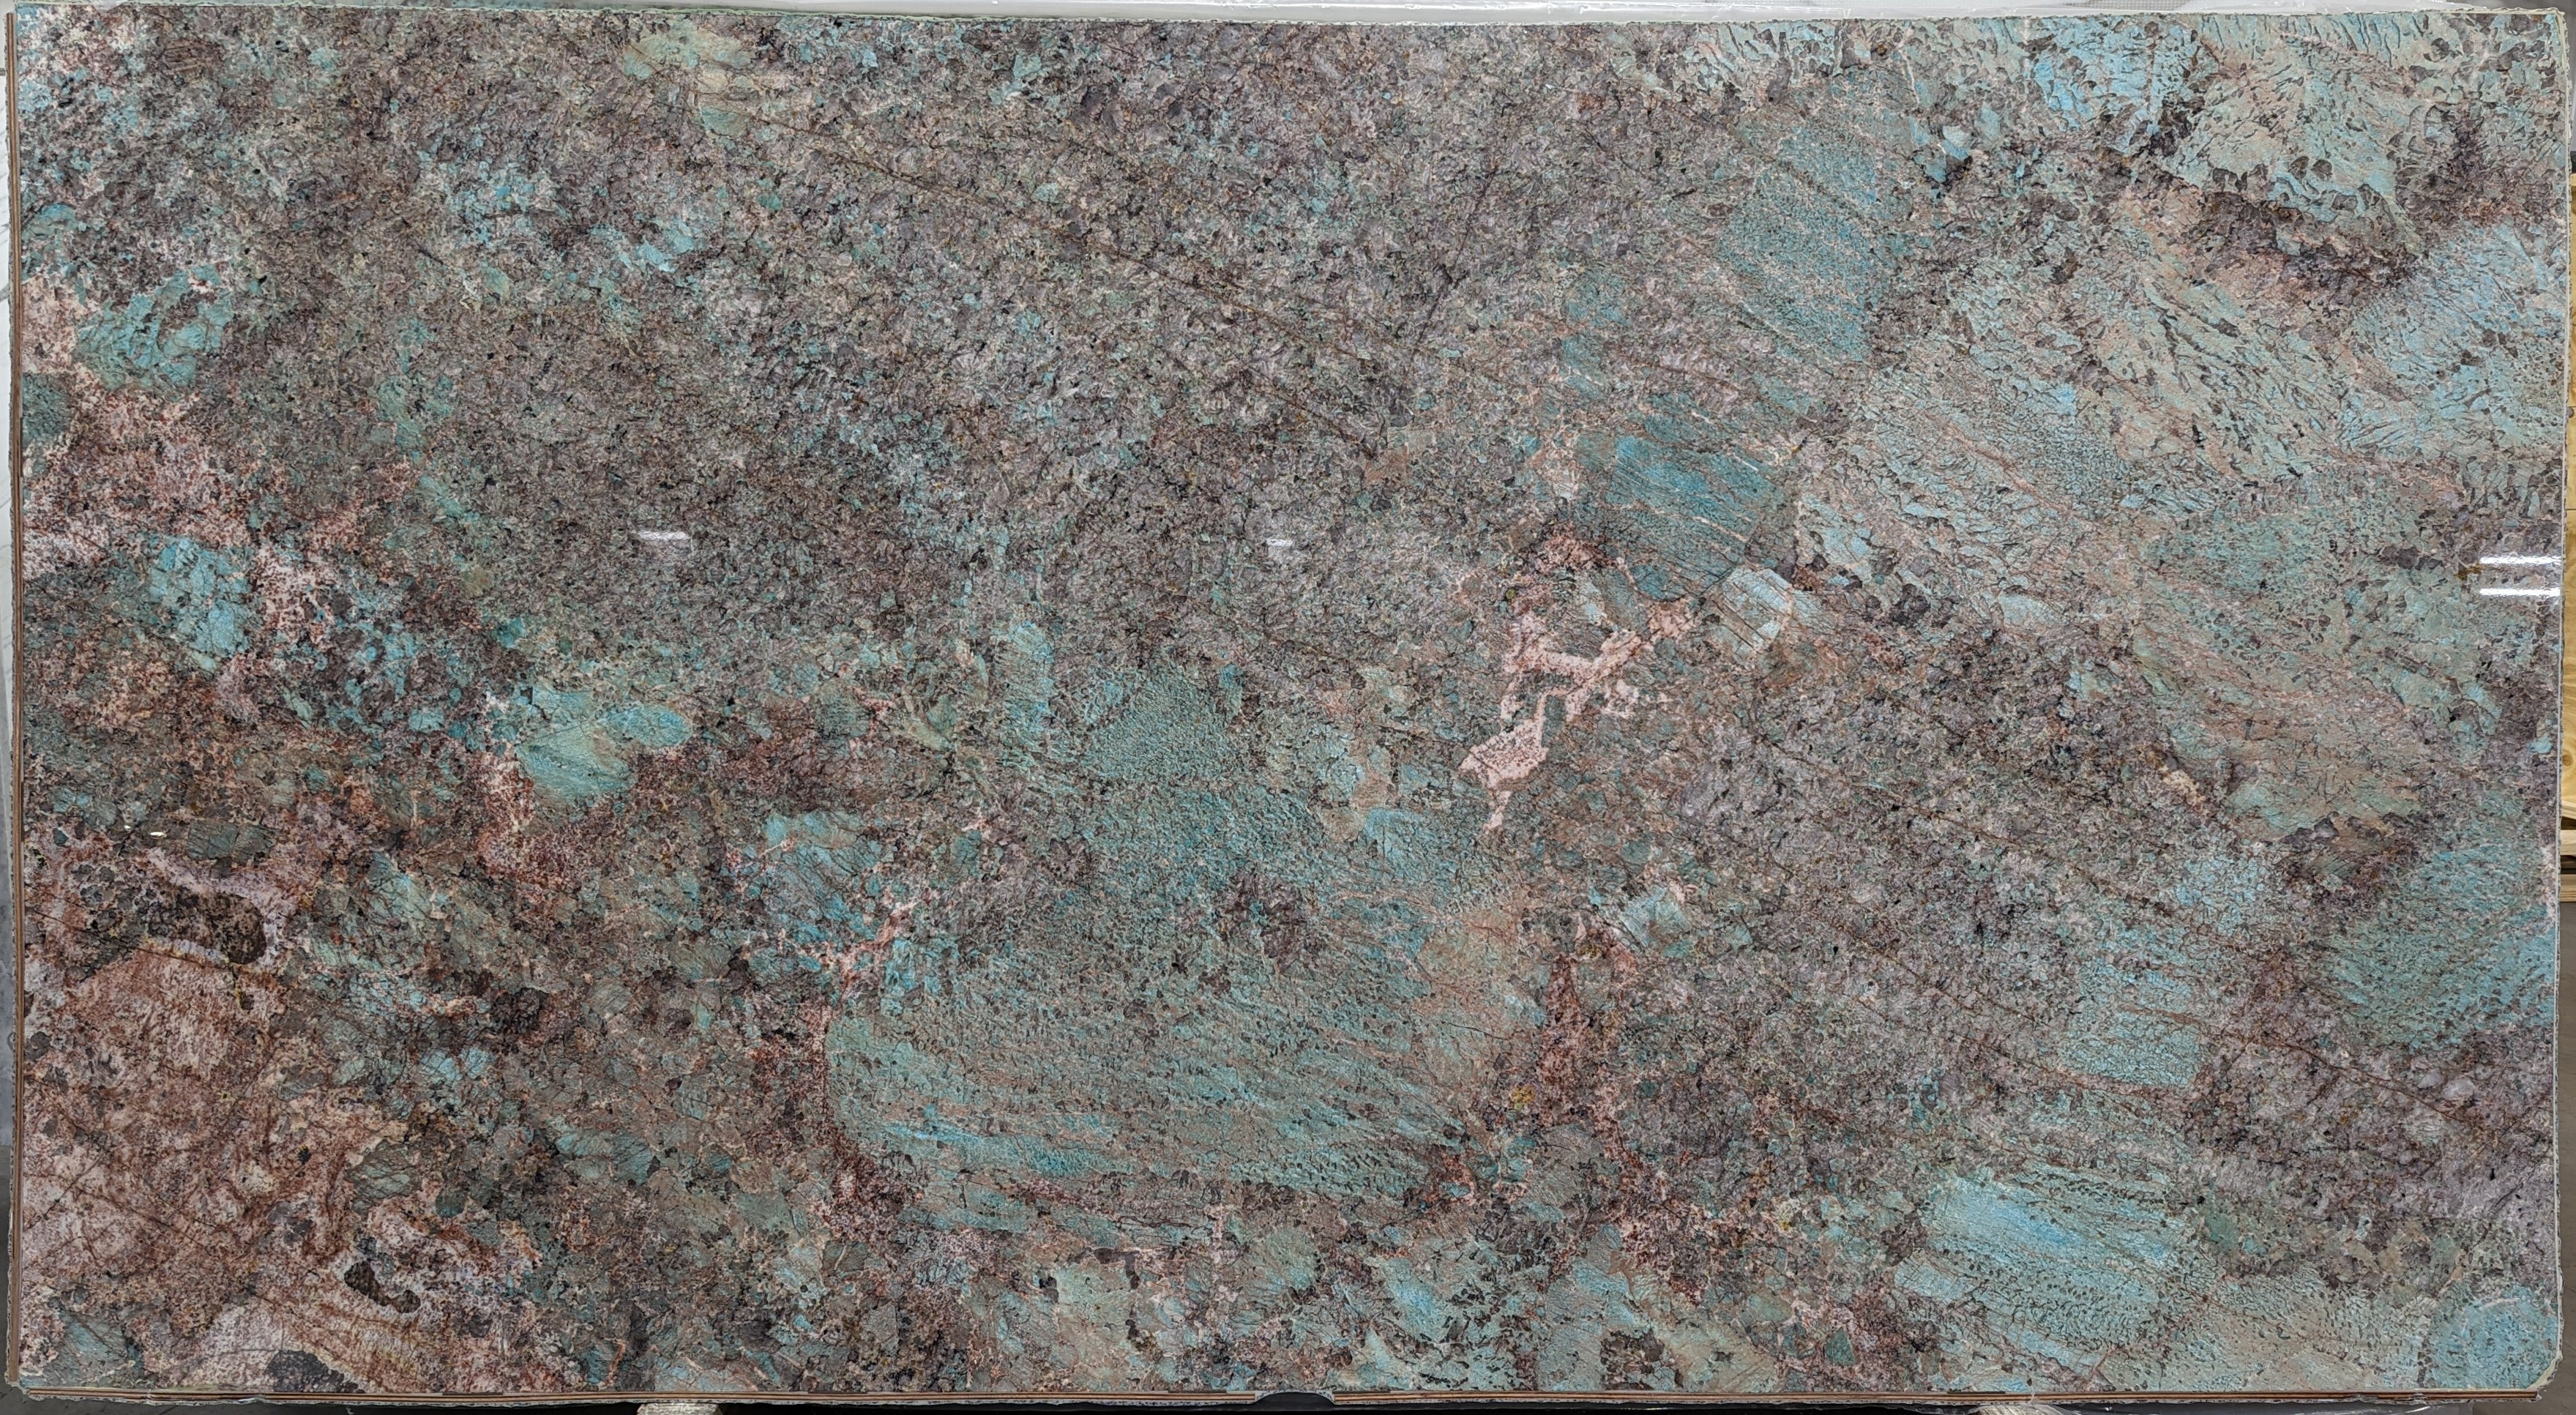  Amazonite Quartzite Slab 3/4  Polished Stone - 20921#29 -  64X119 